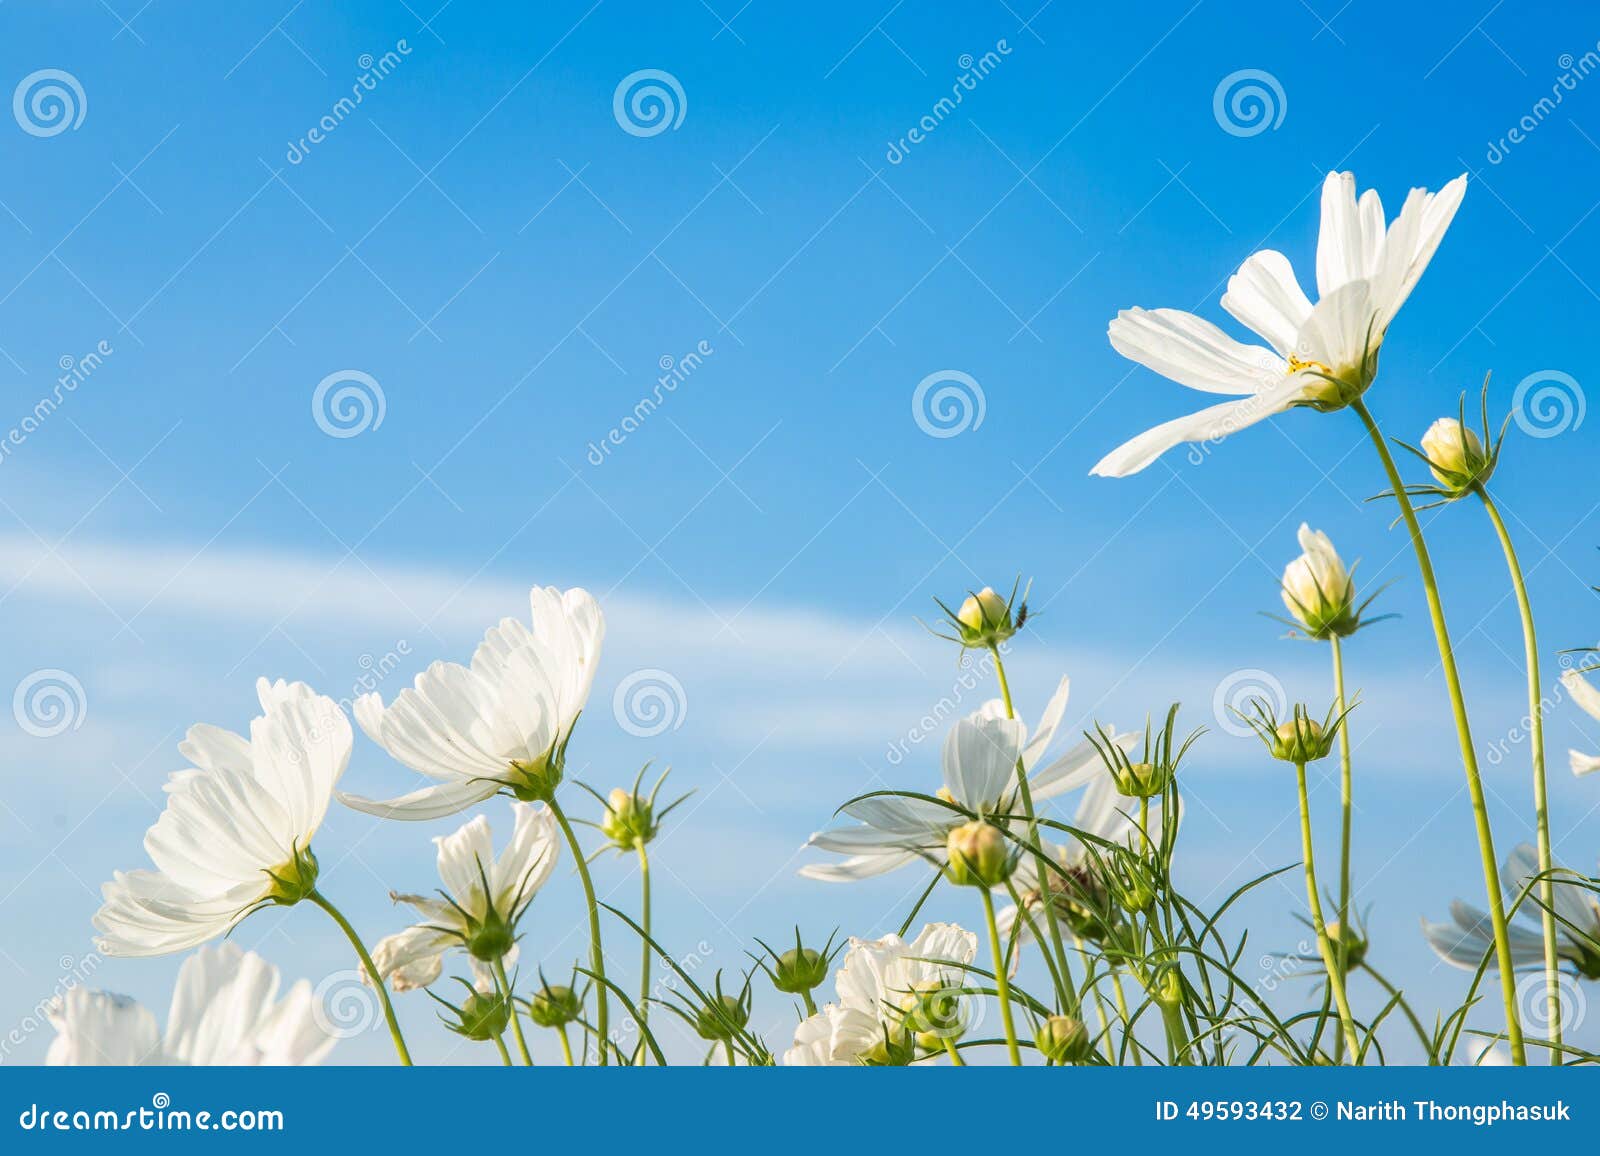 c.sulphureus cav. or sulfur cosmos, flower and blue sky